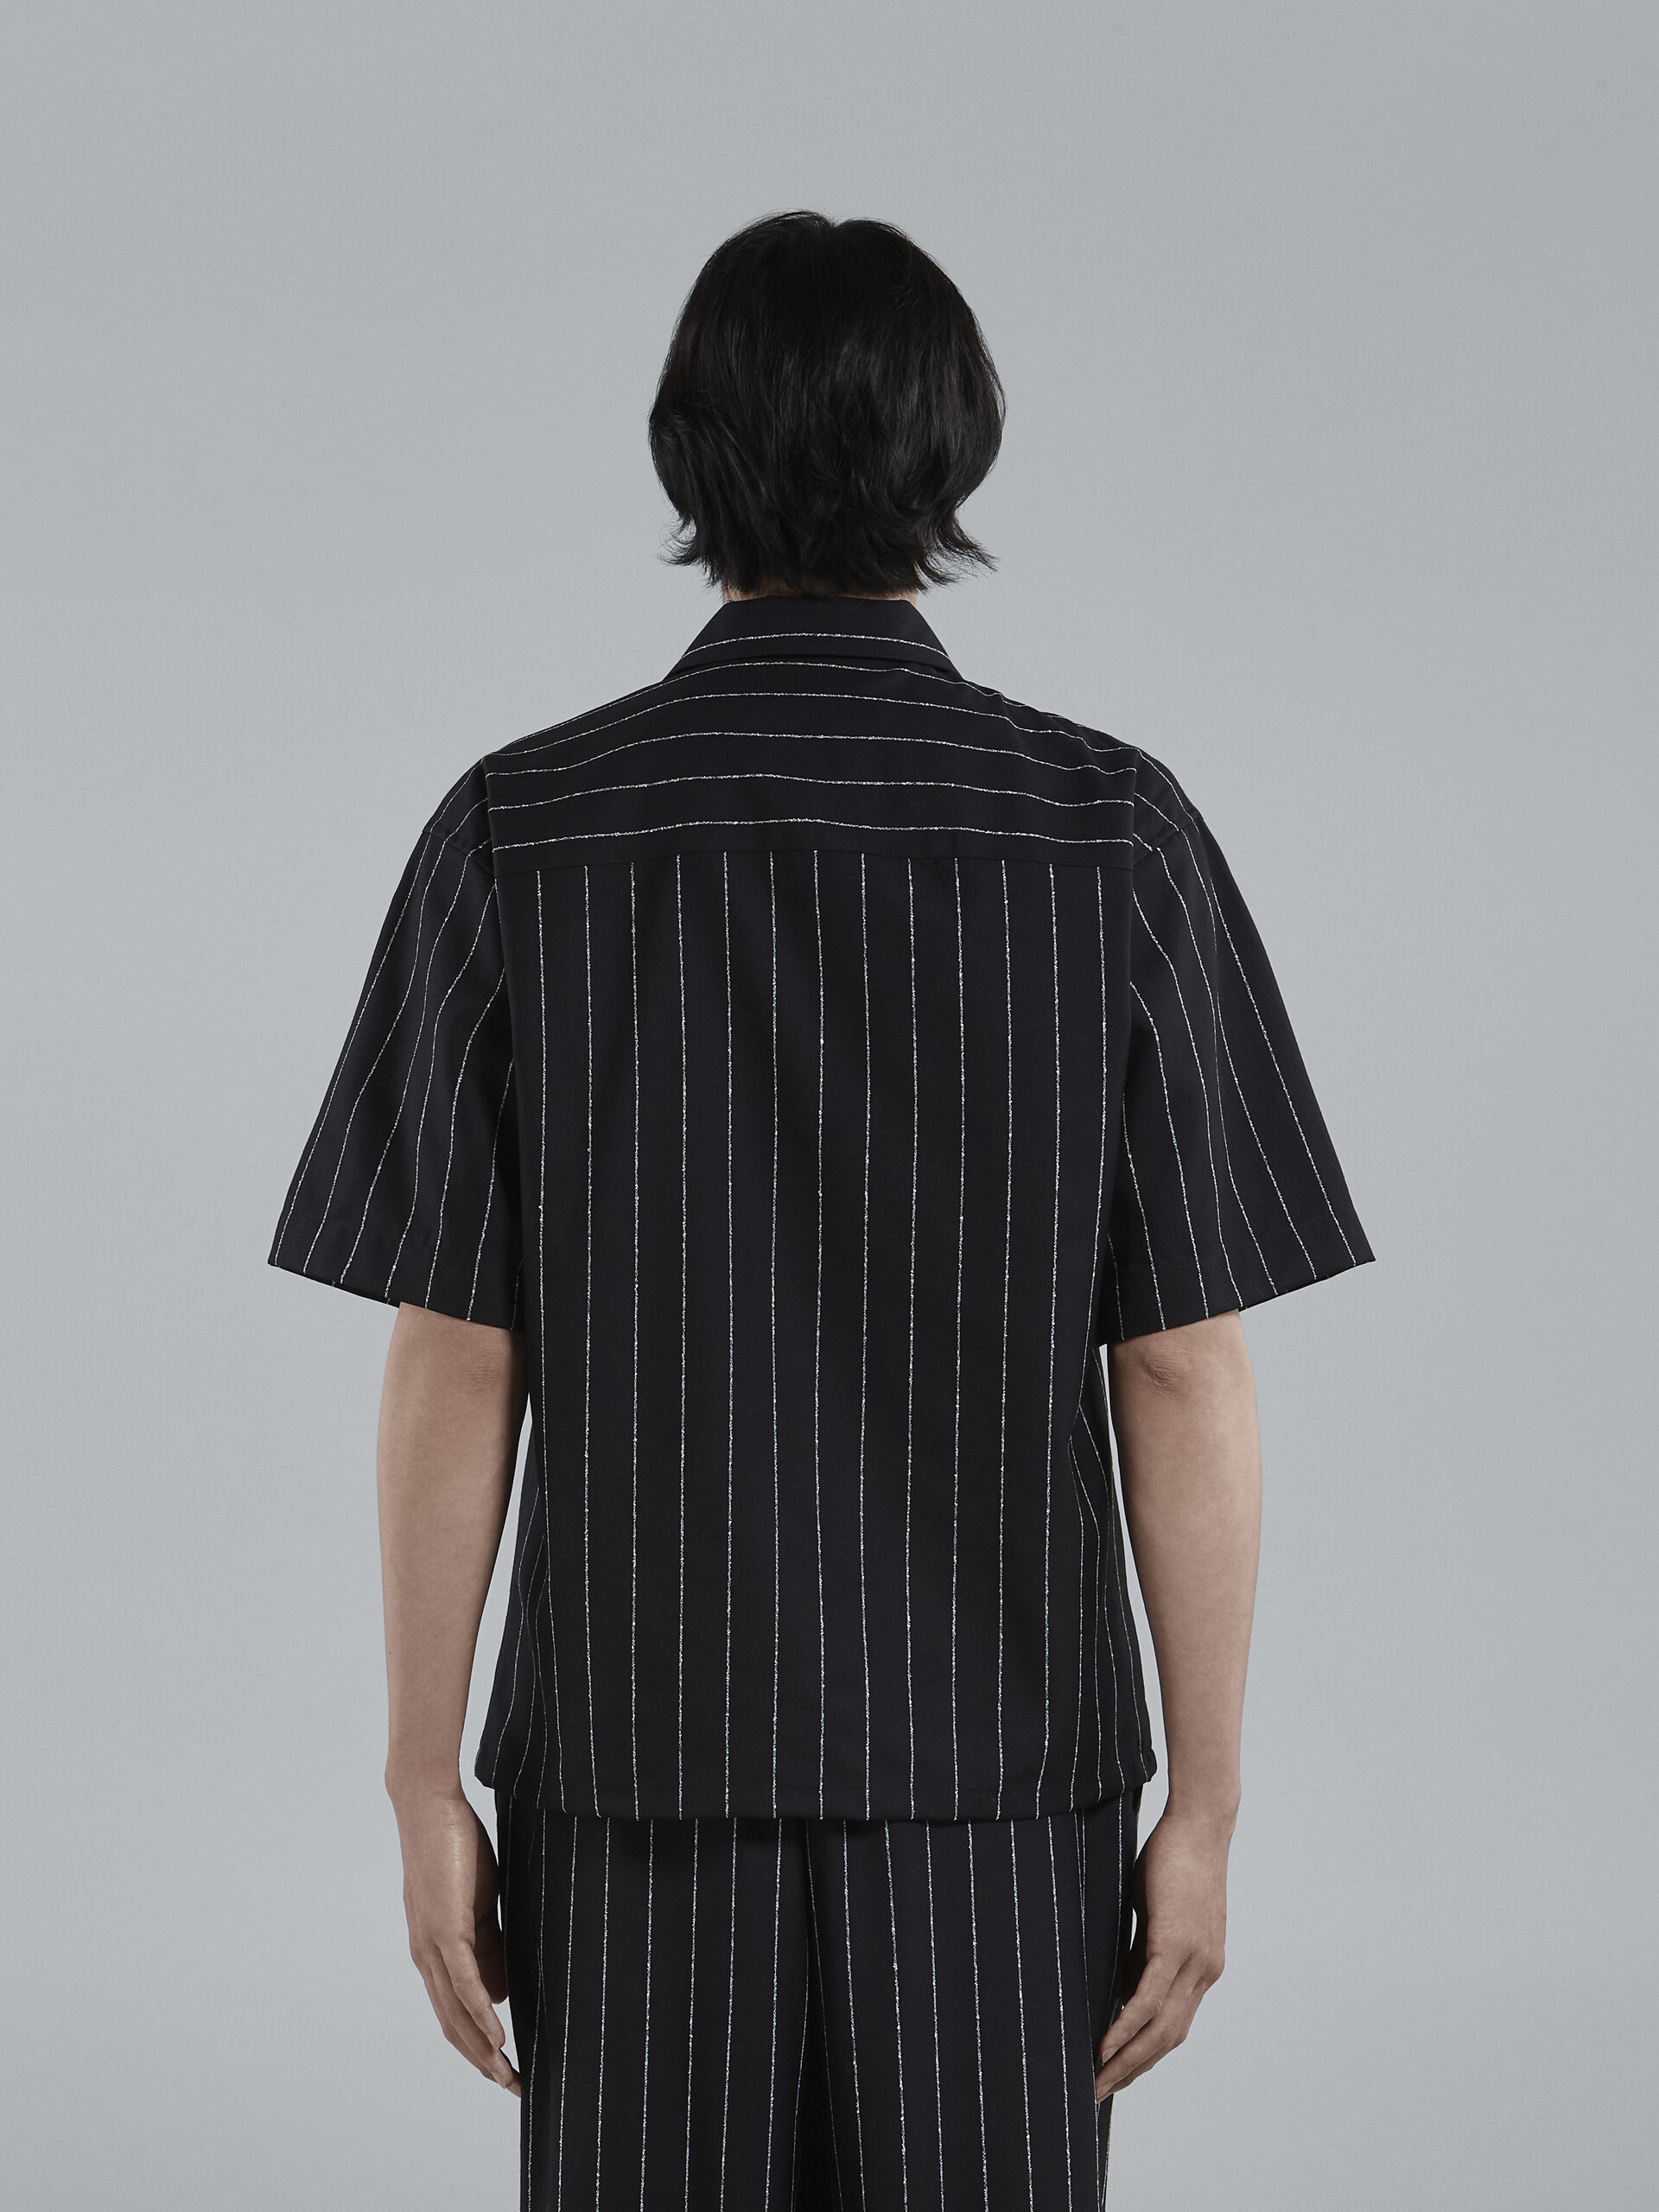 ブラック ピンストライプ フレスコウール地ボーリングシャツ - シャツ - Image 3